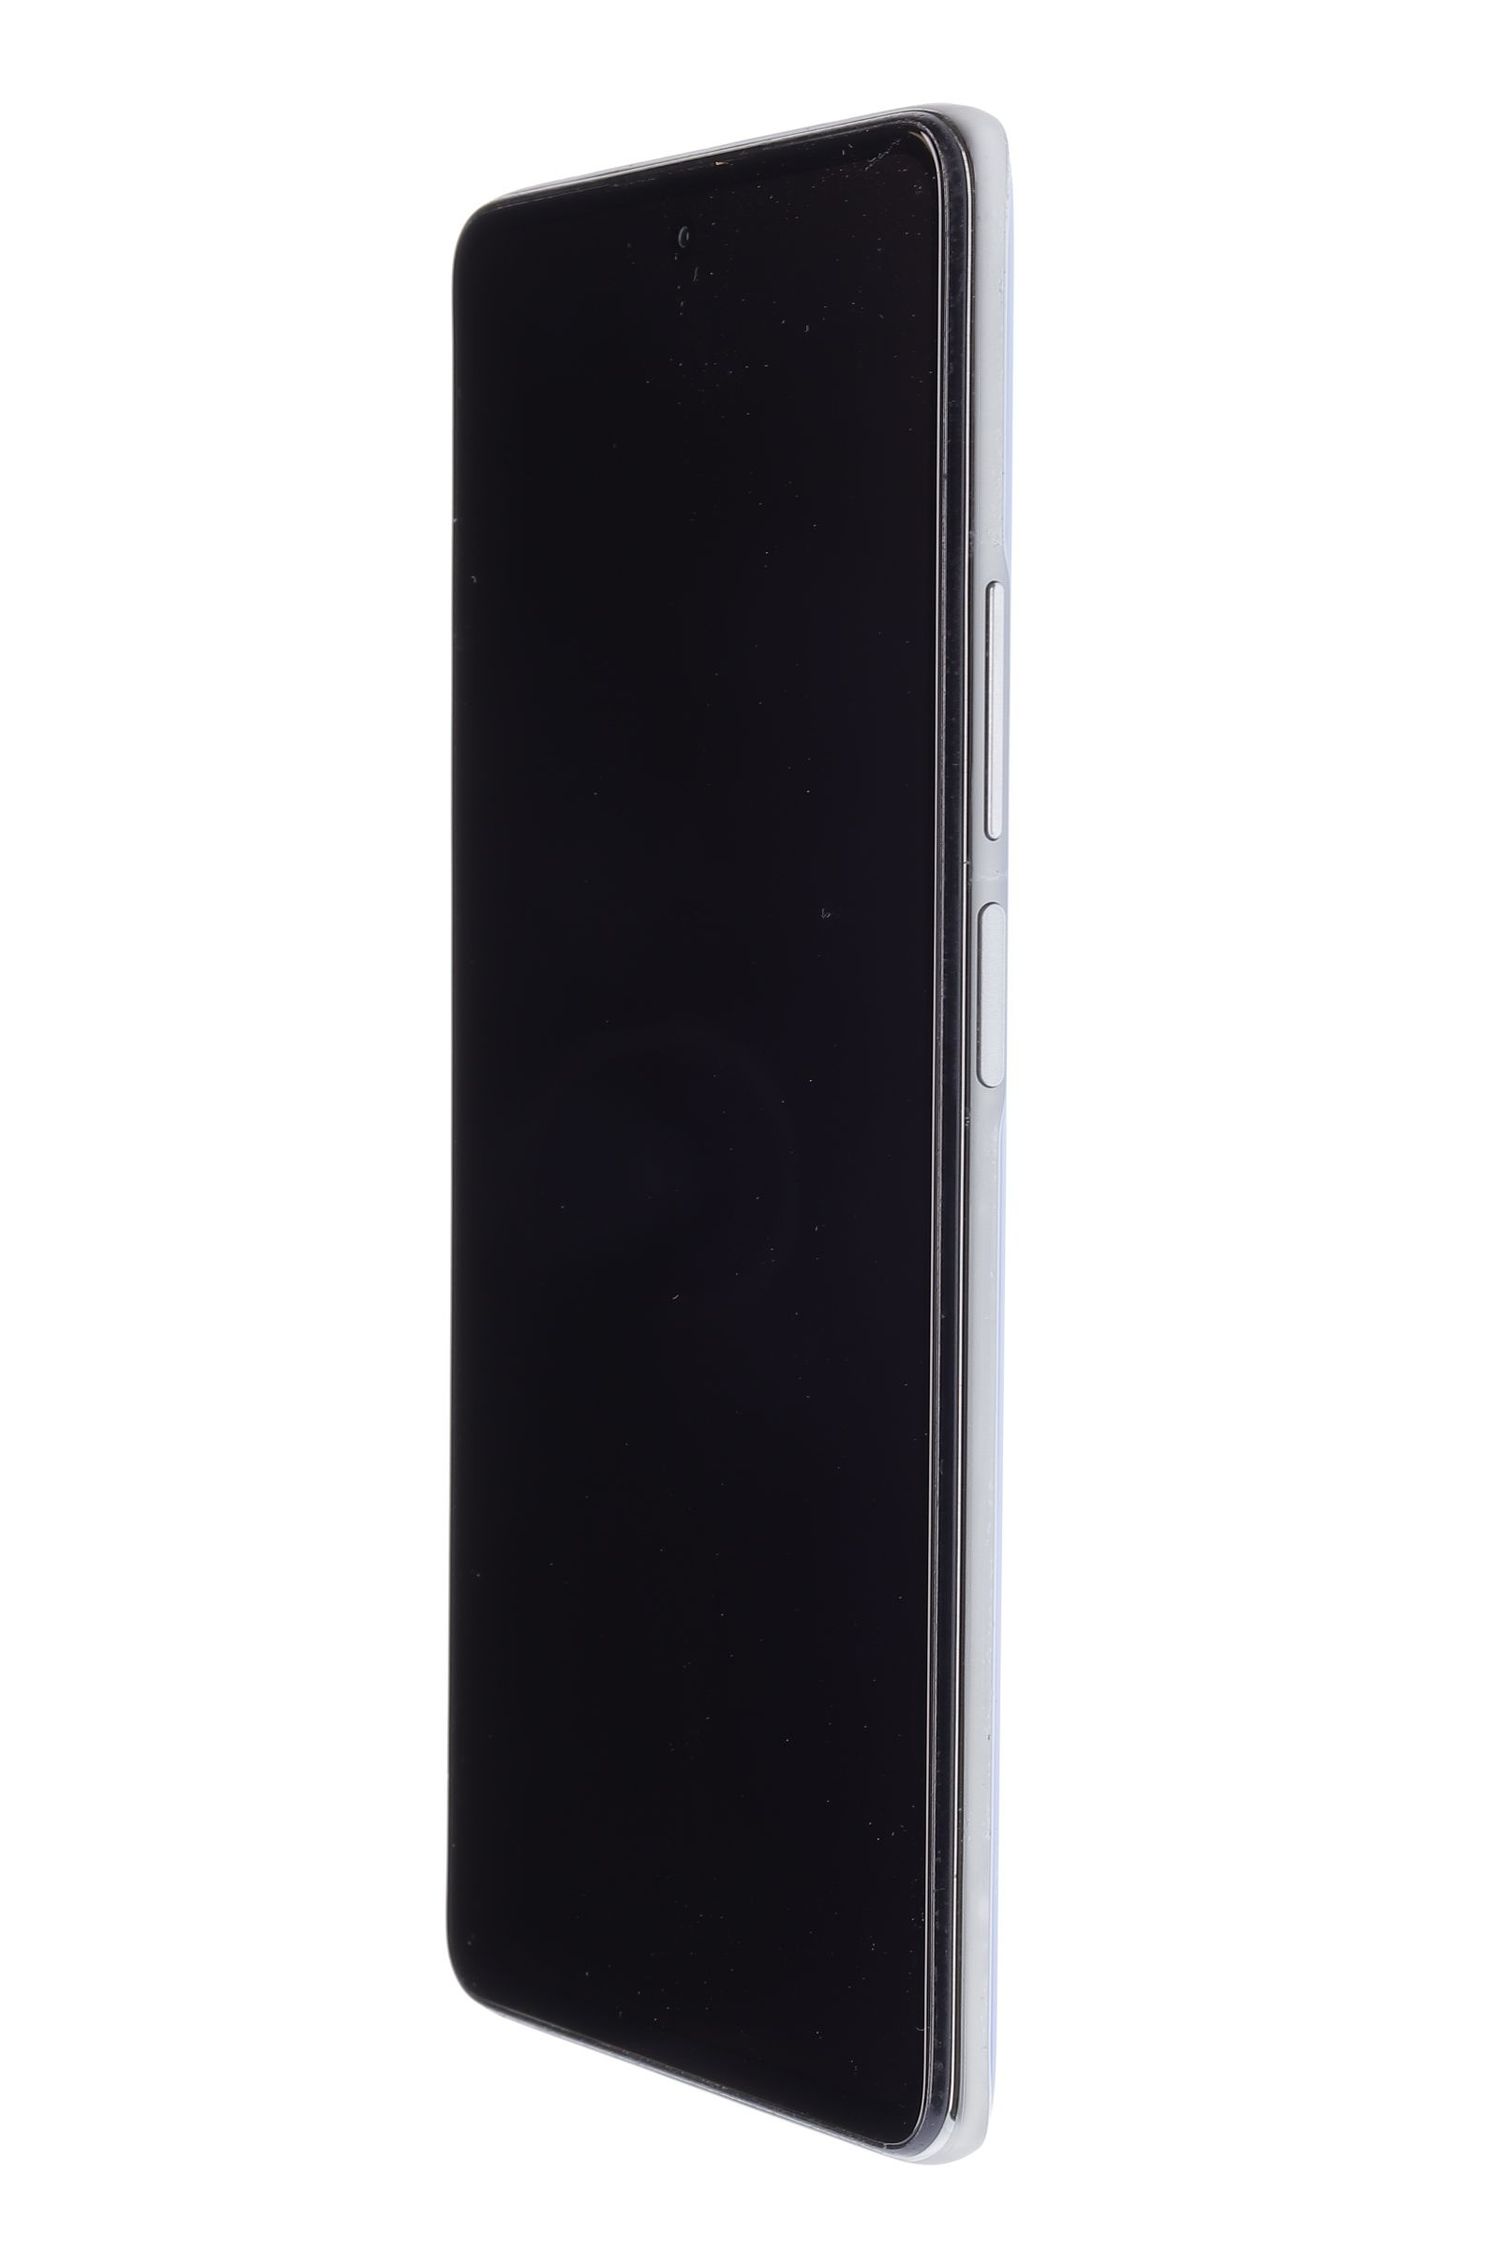 Mobiltelefon Xiaomi Mi 11T Pro 5G, Celestial Blue, 256 GB, Foarte Bun